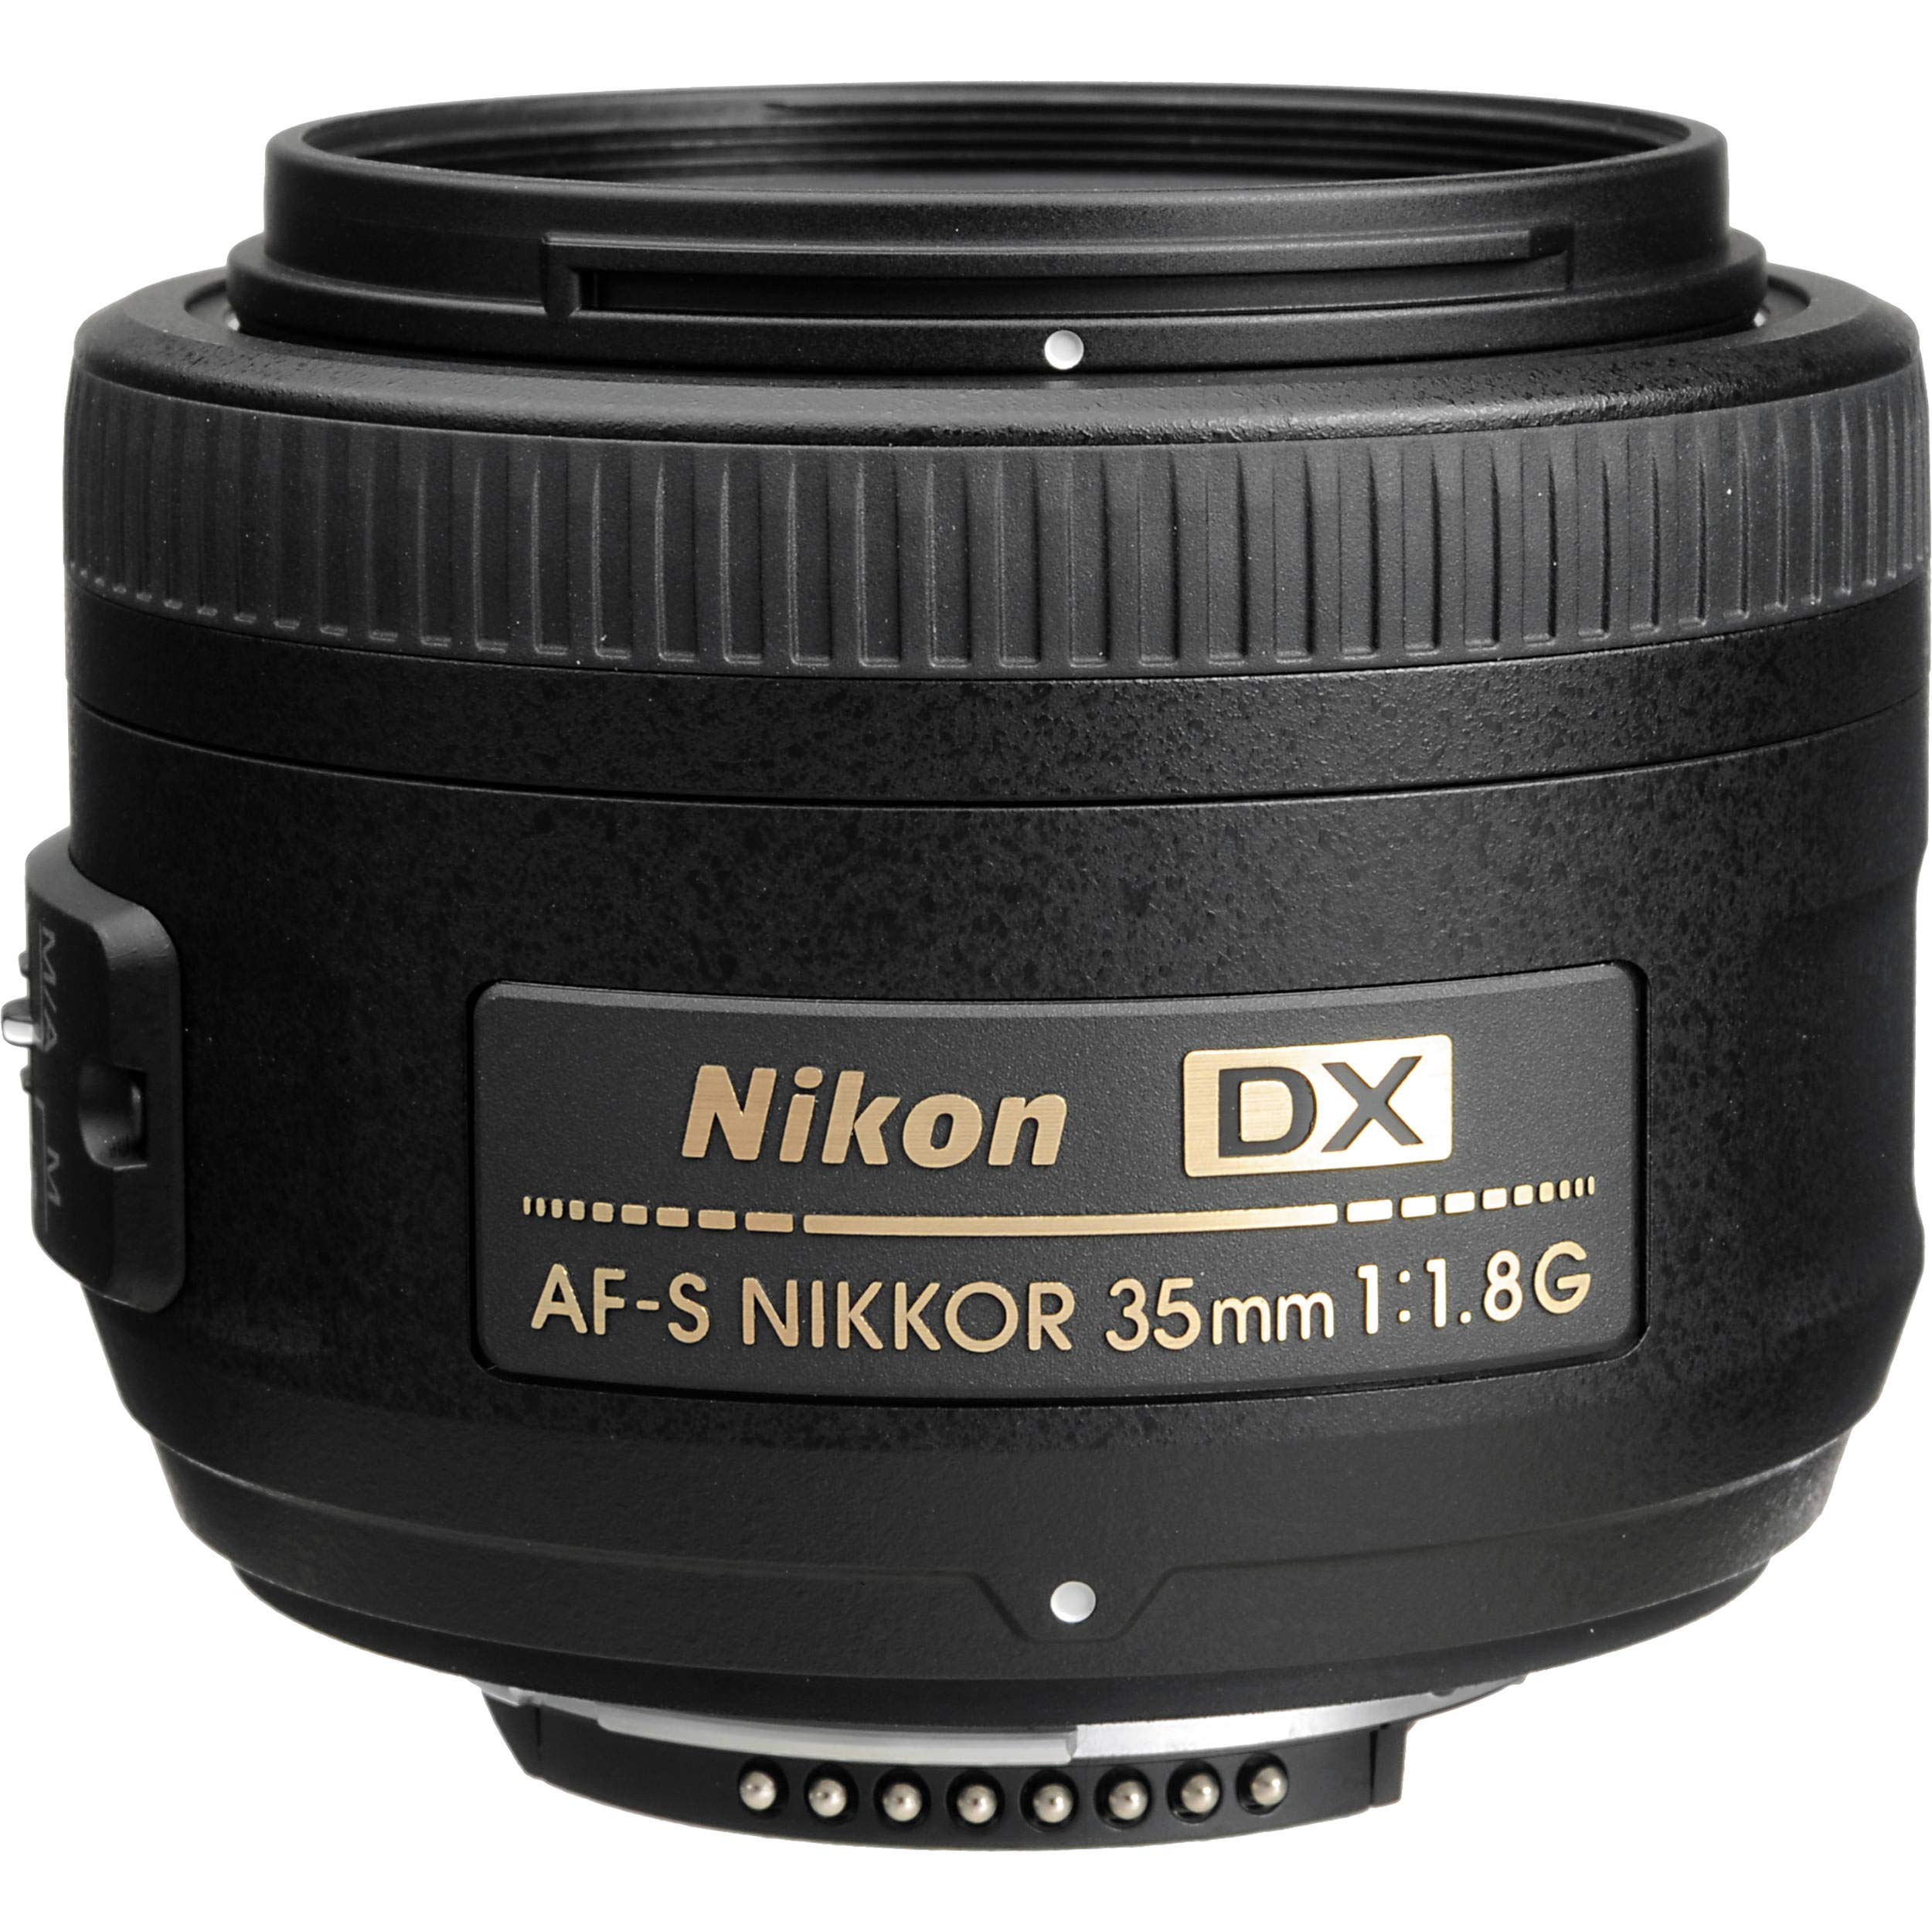 Nikon AF-S DX NIKKOR 35mm f/1.8G Lens + 4.5 inch Vivitar Premium Lens Case + Cleaning Kit